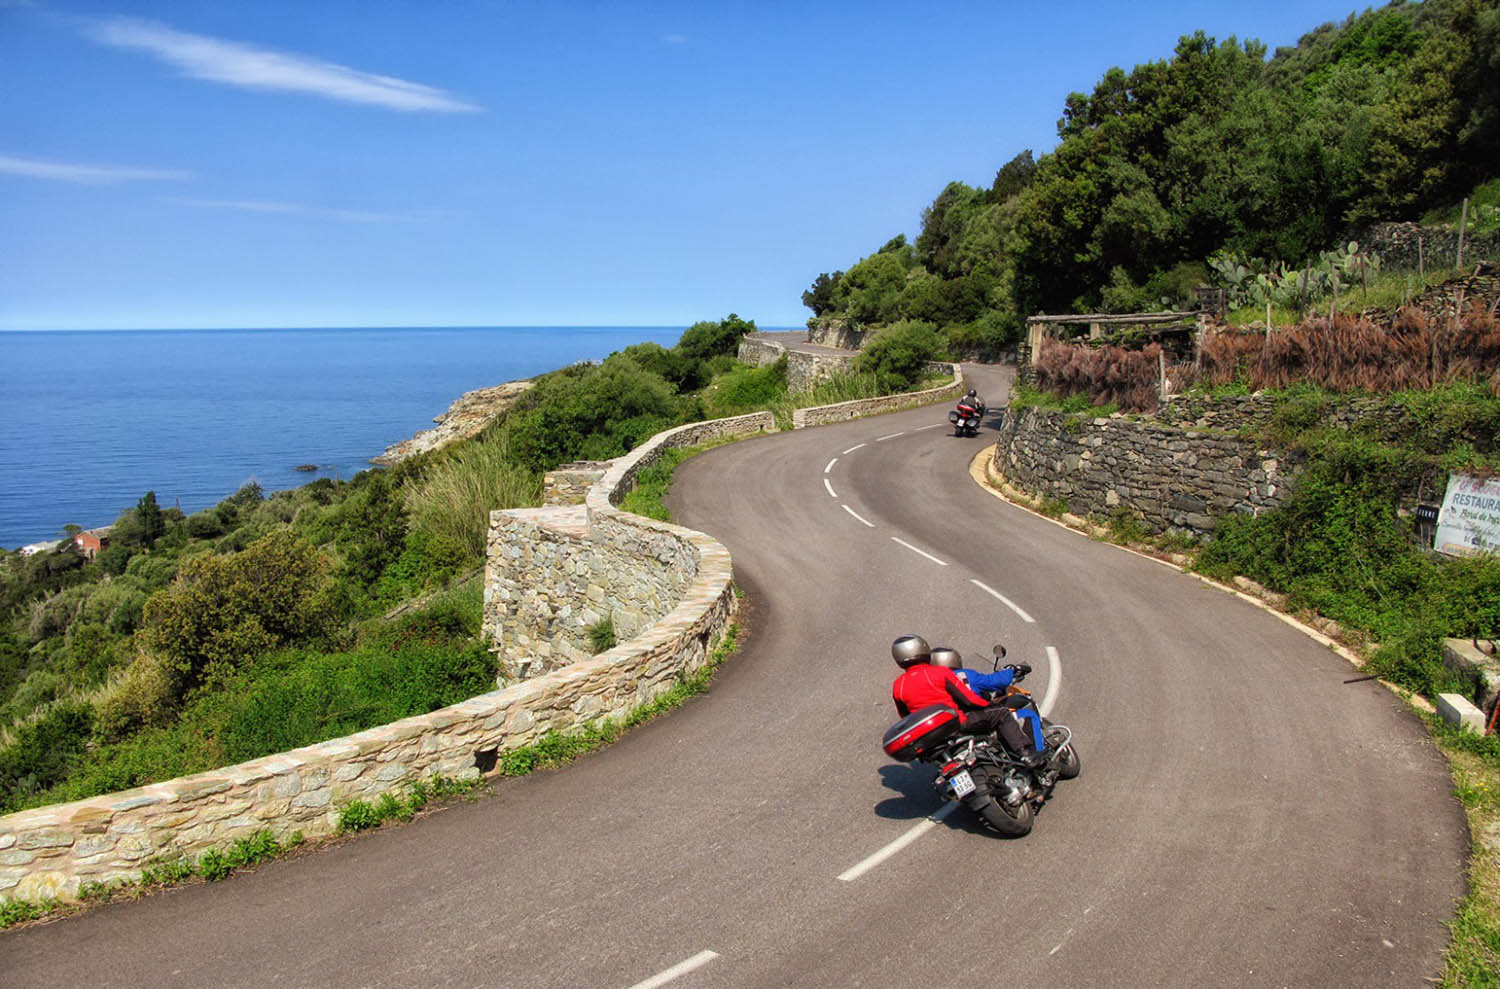 motorcycle tours sardinia